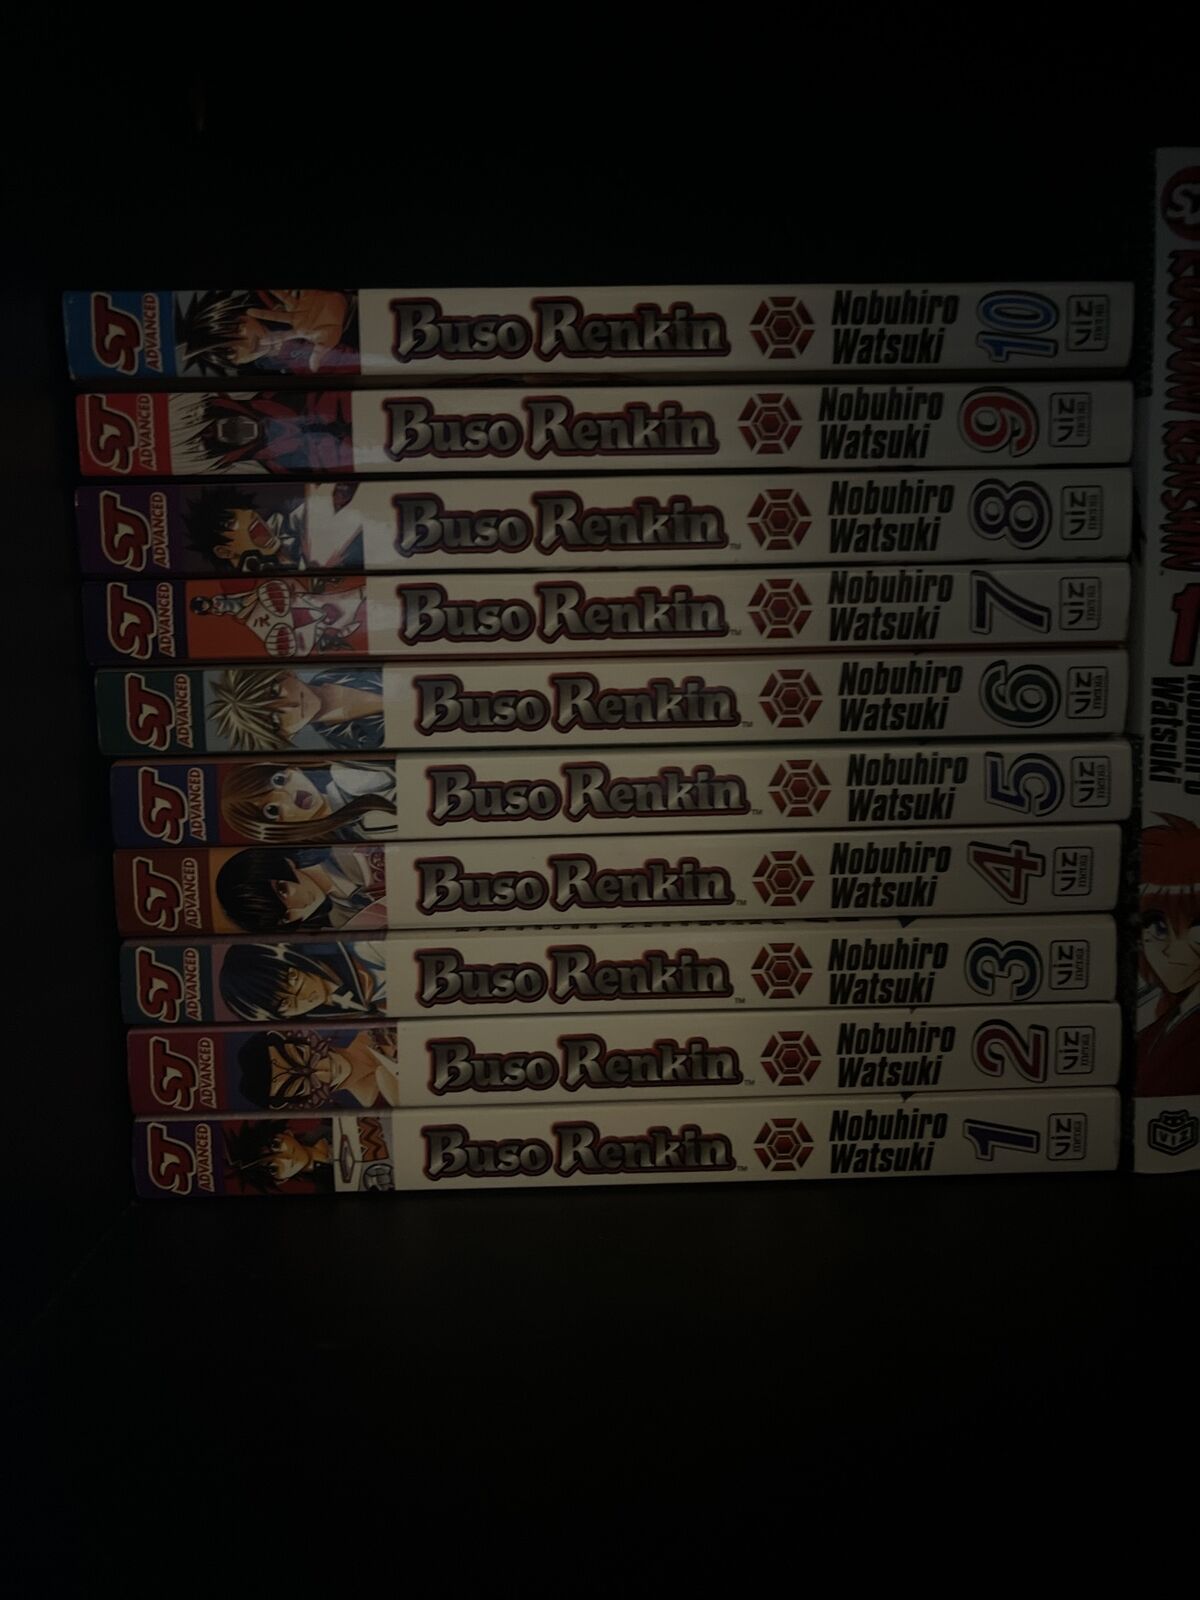 Buso Renkin Complete Manga Set Vol. 1-10 by Nobuhiro Watsuki